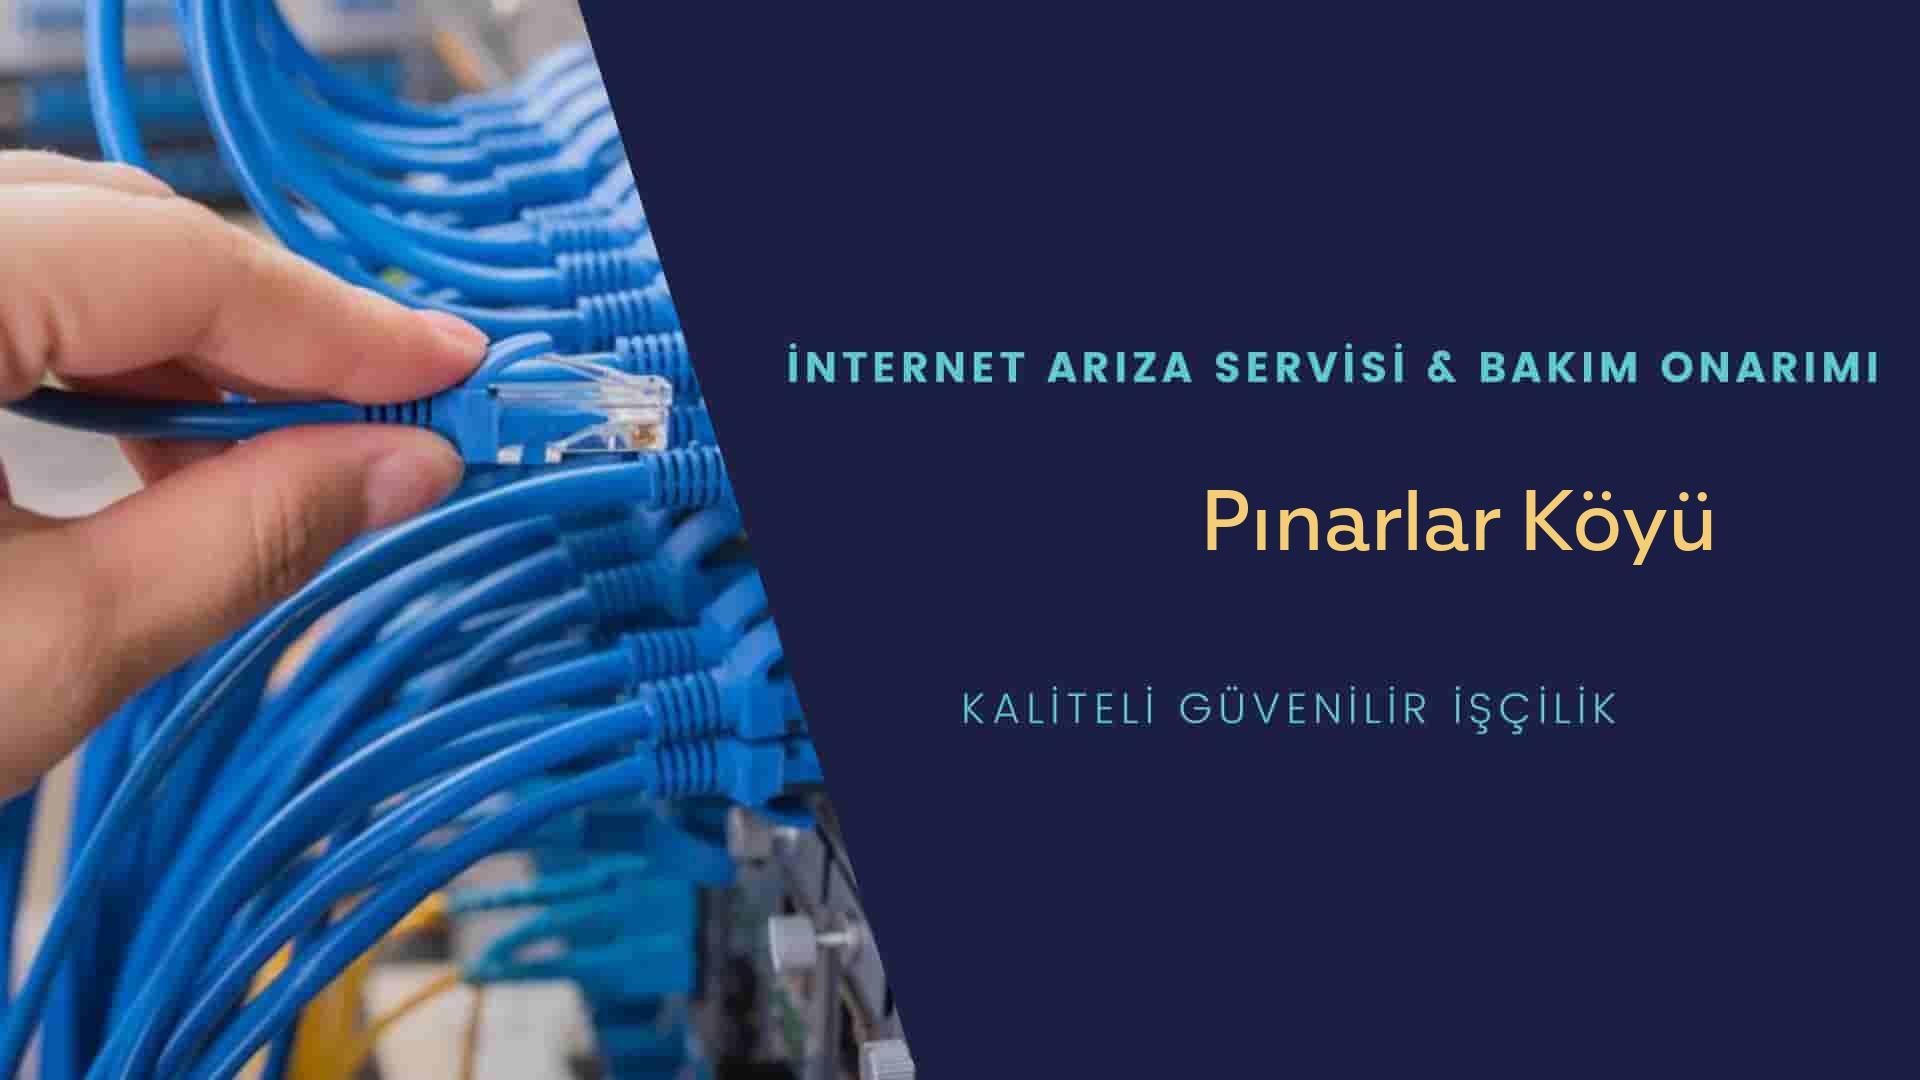 Pınarlar Köyü internet kablosu çekimi yapan yerler veya elektrikçiler mi? arıyorsunuz doğru yerdesiniz o zaman sizlere 7/24 yardımcı olacak profesyonel ustalarımız bir telefon kadar yakındır size.